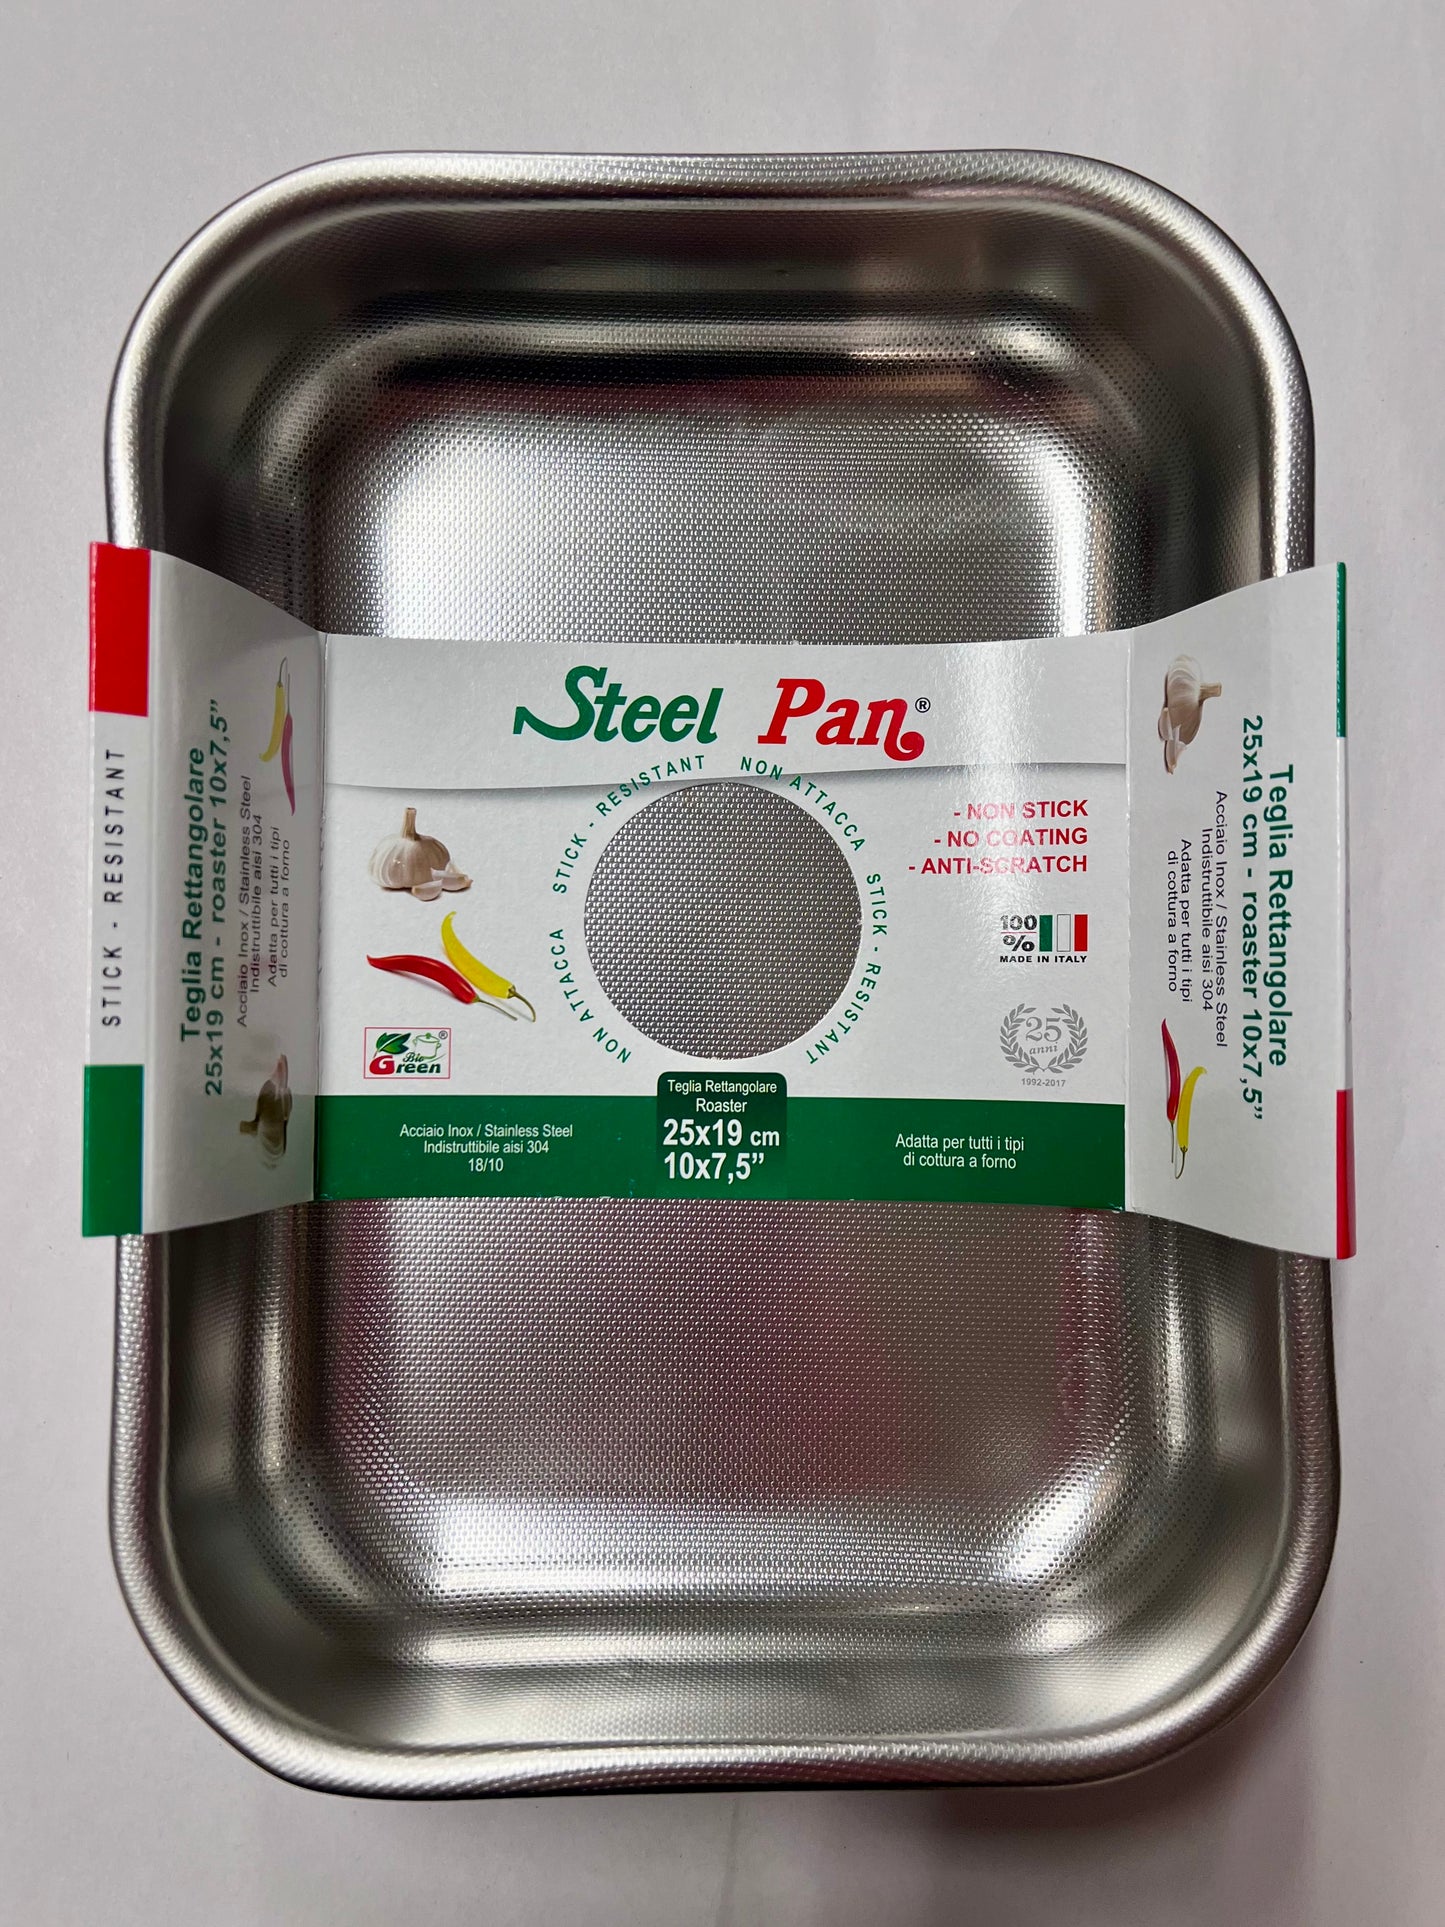 Steel Pan roasting pan, rectangular